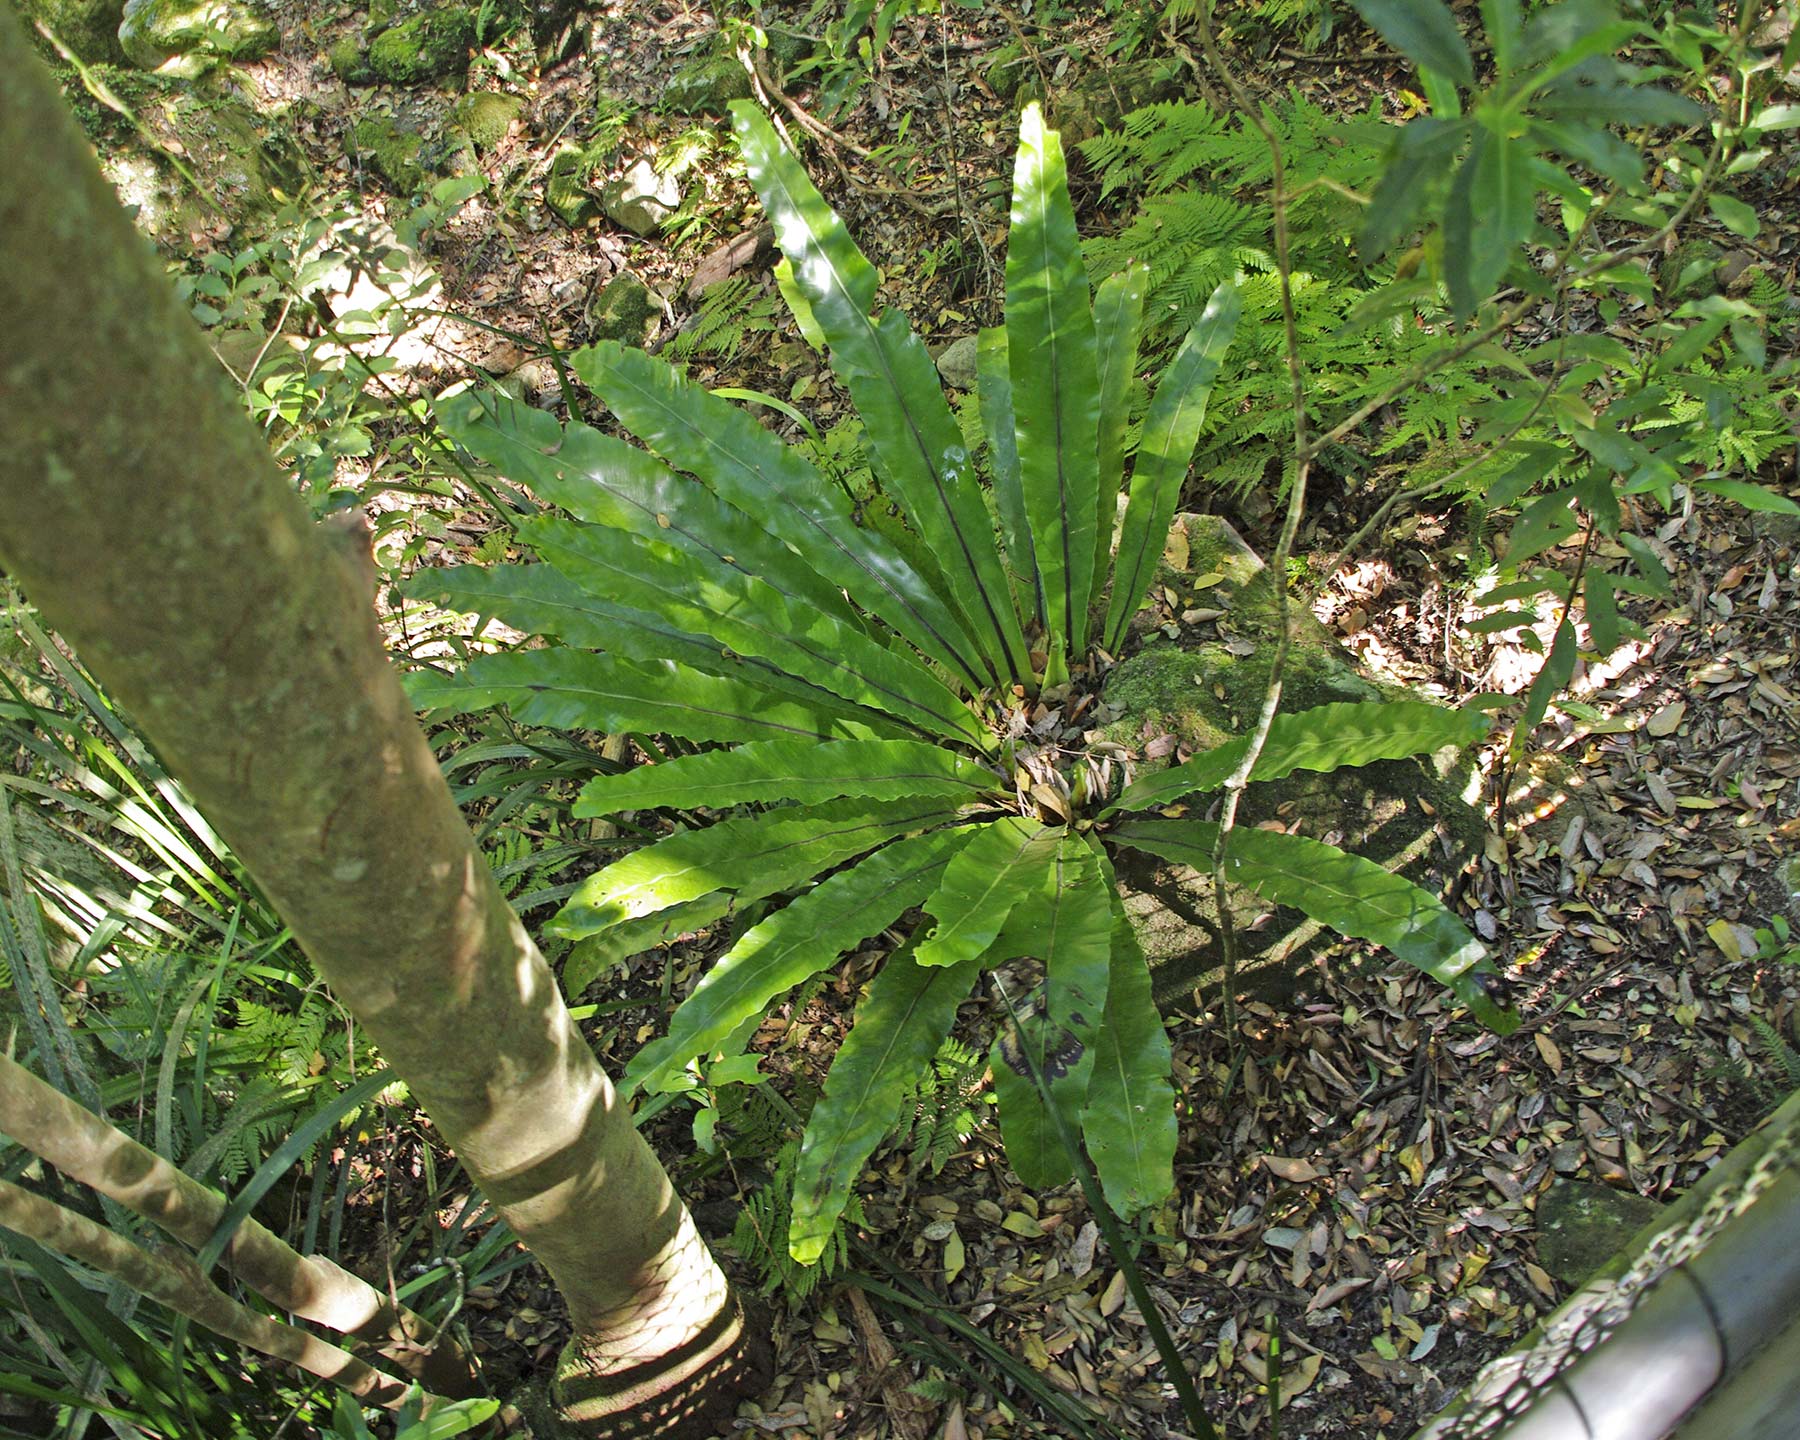 Asplenium australasicum in natural habitat, Minumurra Falls, NSW